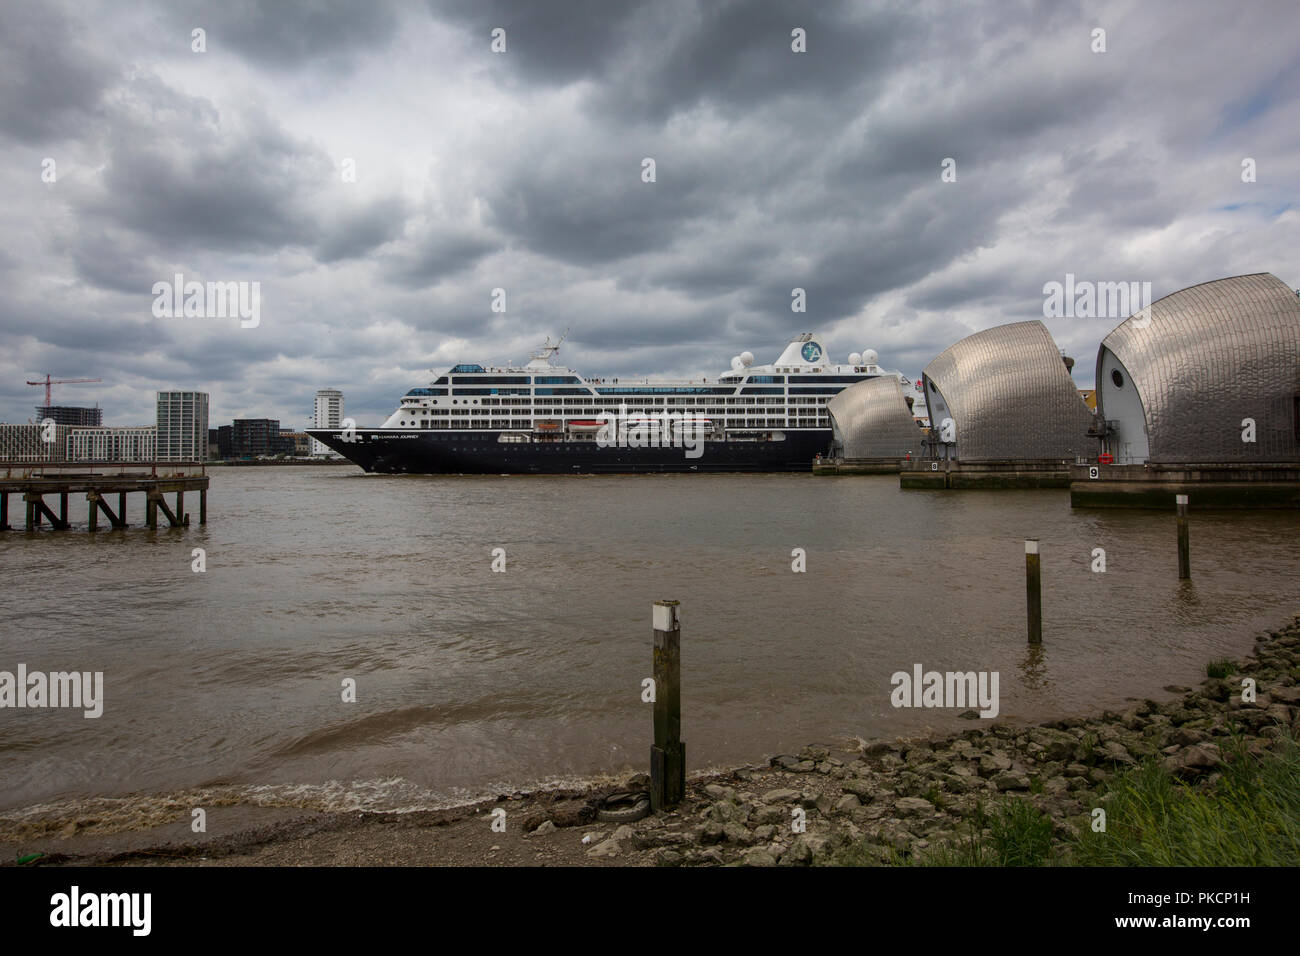 Azamara Kreuzfahrtschiff durch die Thames Barrier, bewegliches Sturmflutwehr auf der Themse im Südosten von London, England, UK gelegen Stockfoto